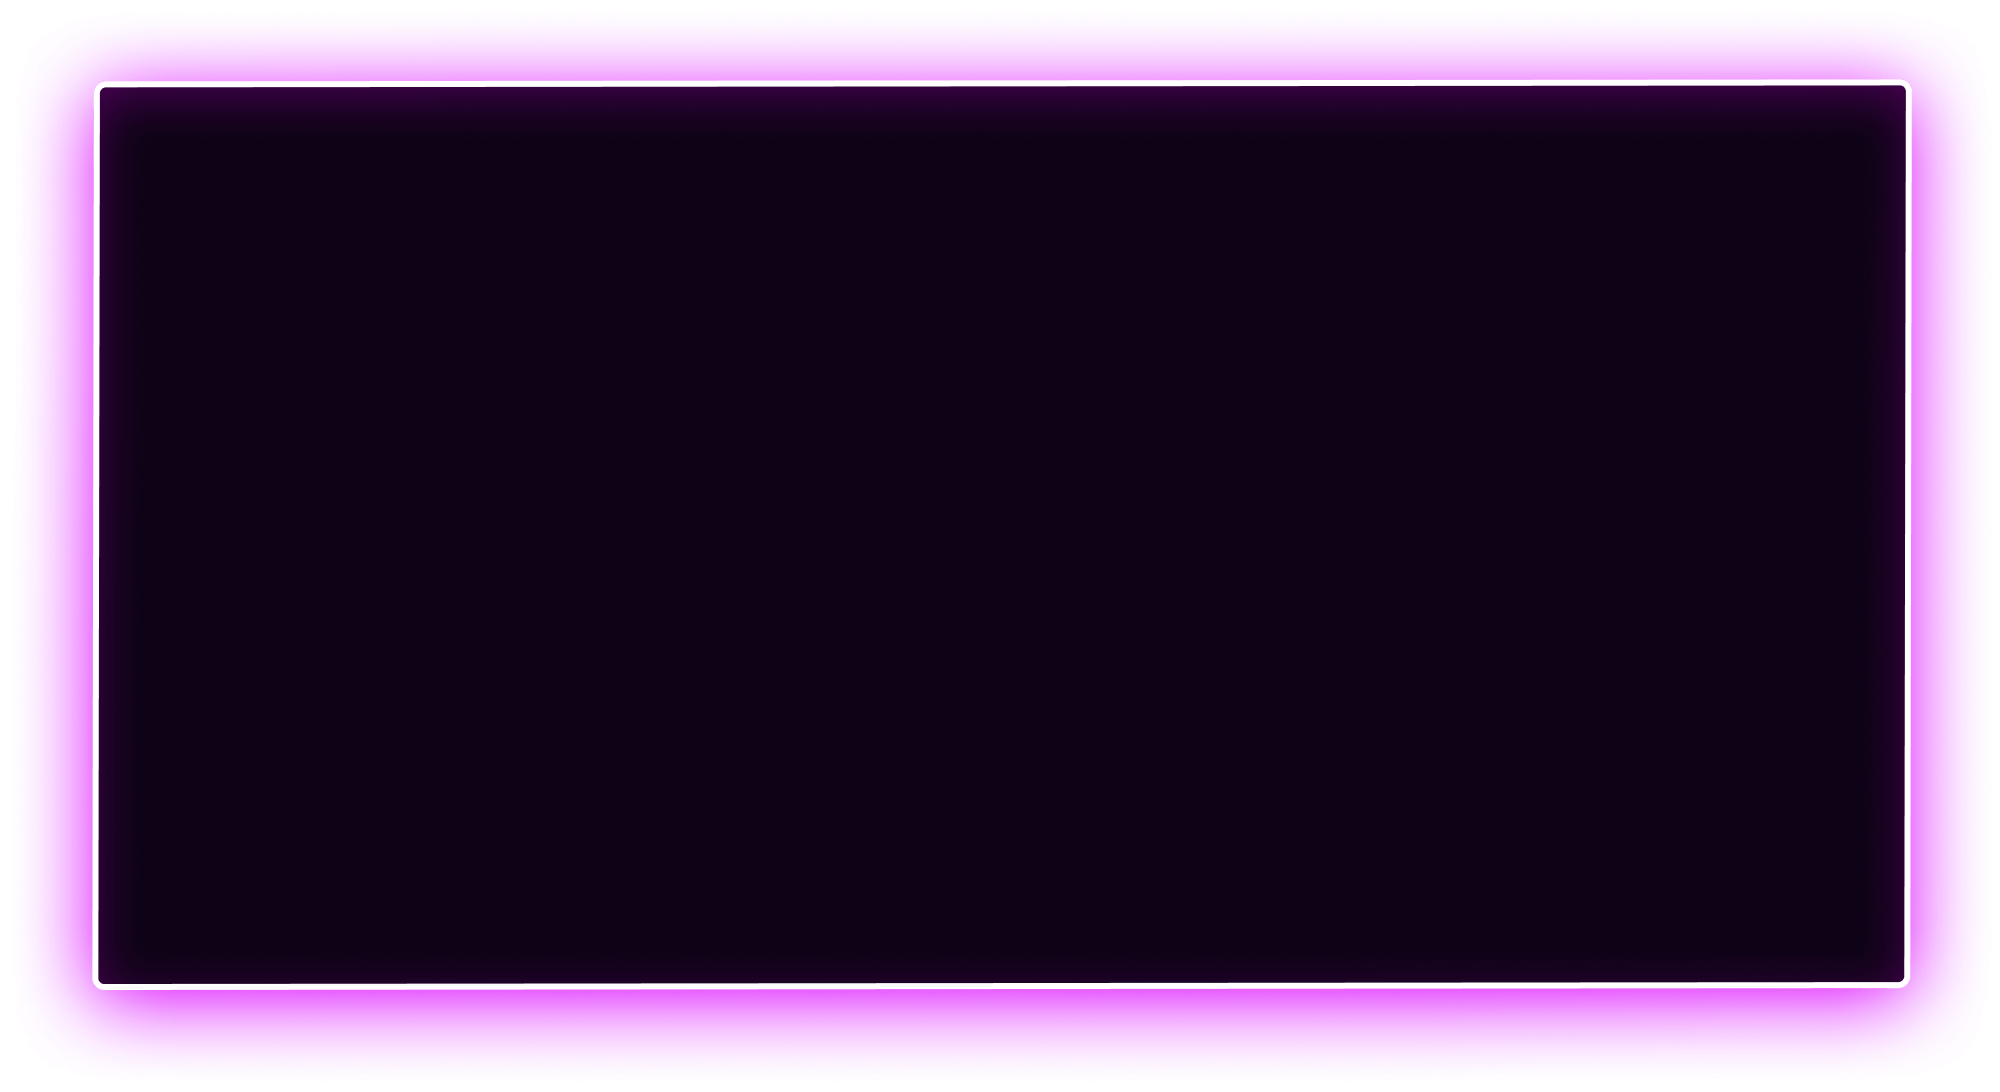 черный прямоугольник, черный четырехугольник, черный фон, прямоугольник с фиолетовой подсветкой